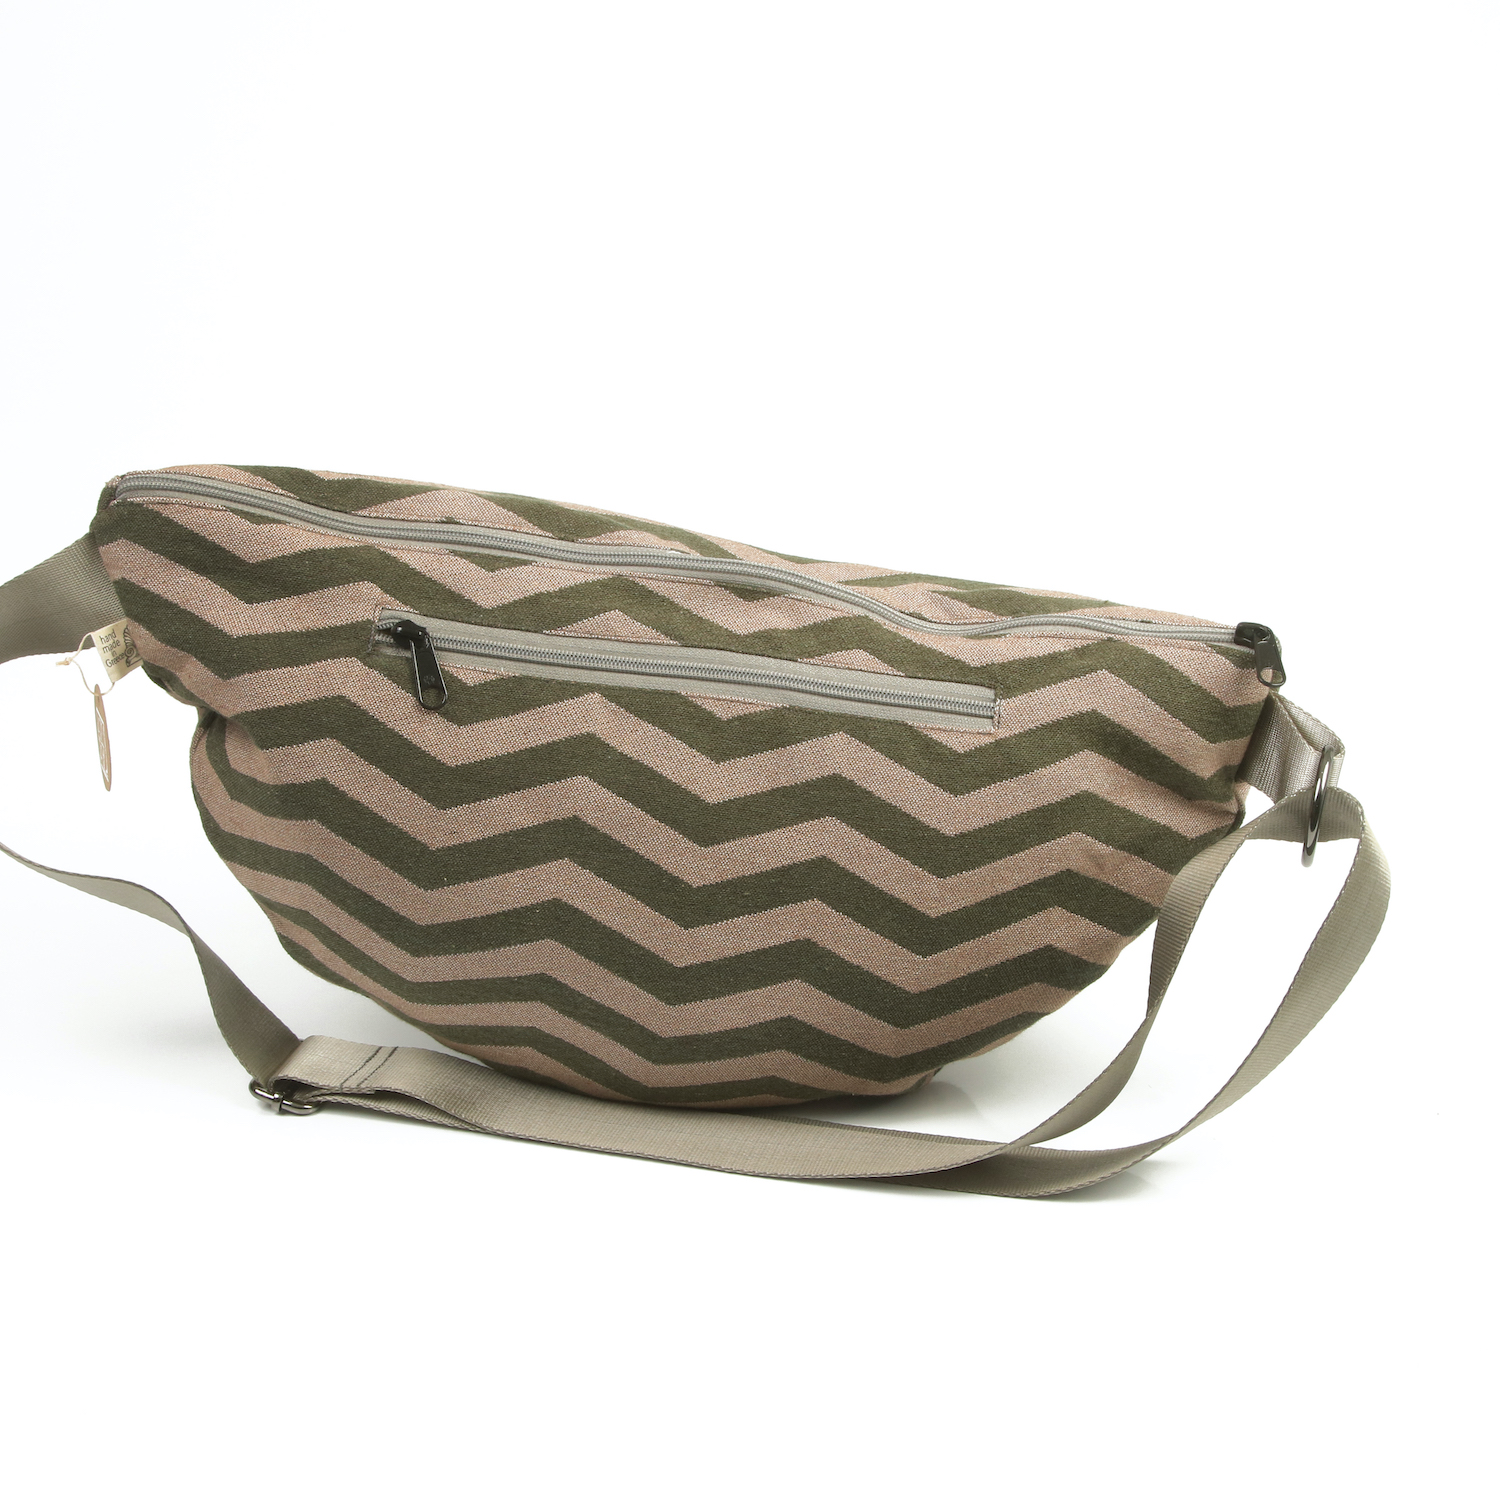 LazyDayz-Designs-Backpack-γυναικείο body bag – bum bag χειροποίητο bn07b